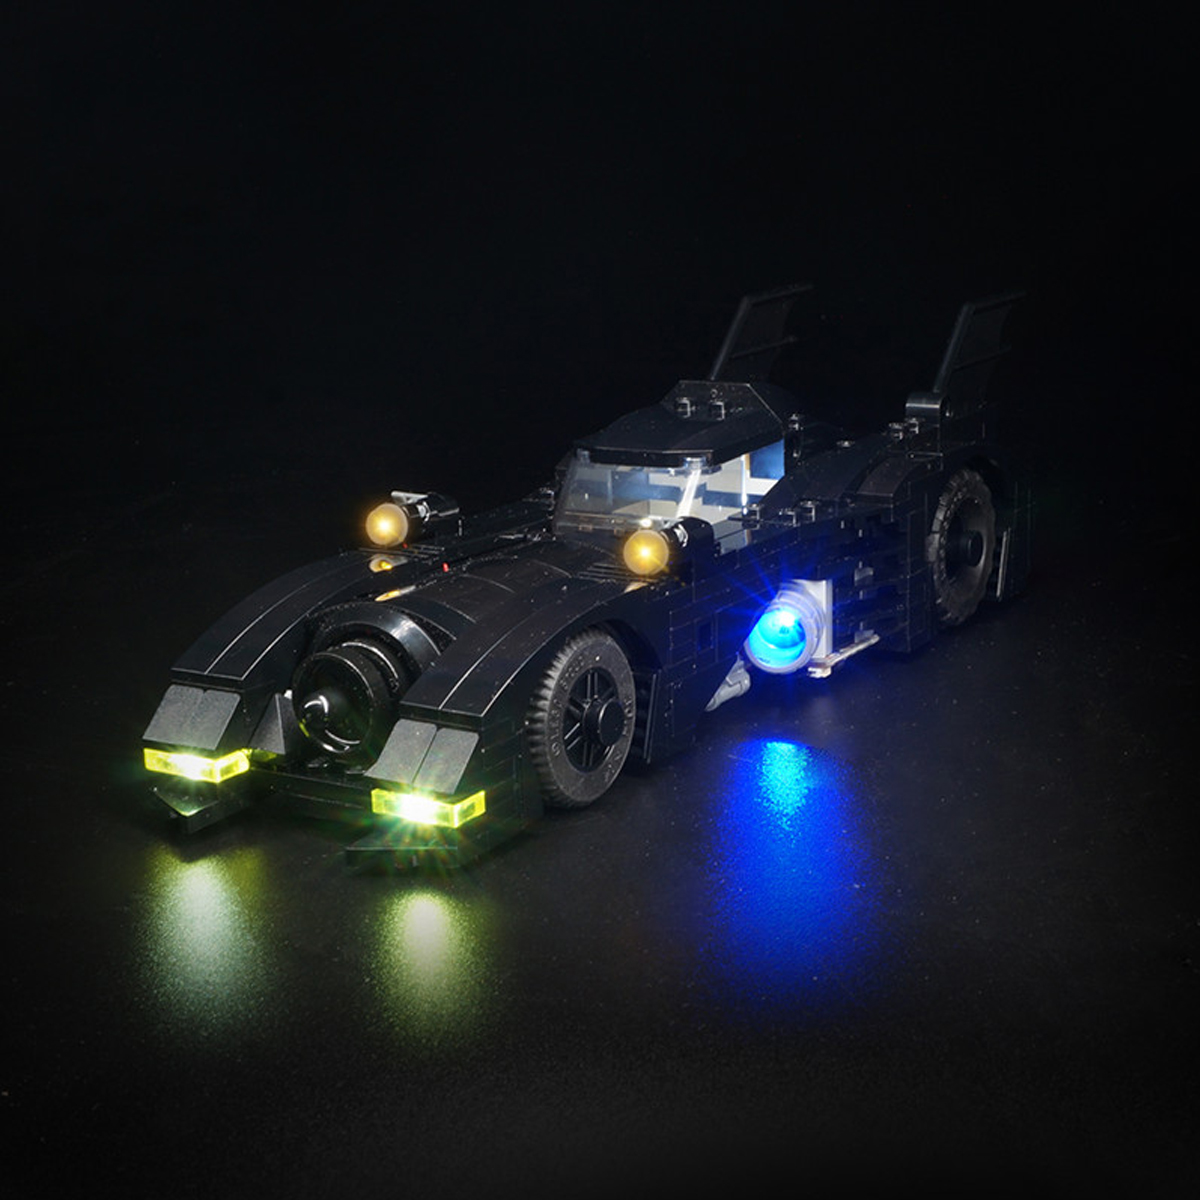 DIY-LED-Light-Lighting-Kit-ONLY-For-LEGO-40433-1989-BatMobile-Mini-Version-Car-Brick-1629831-3